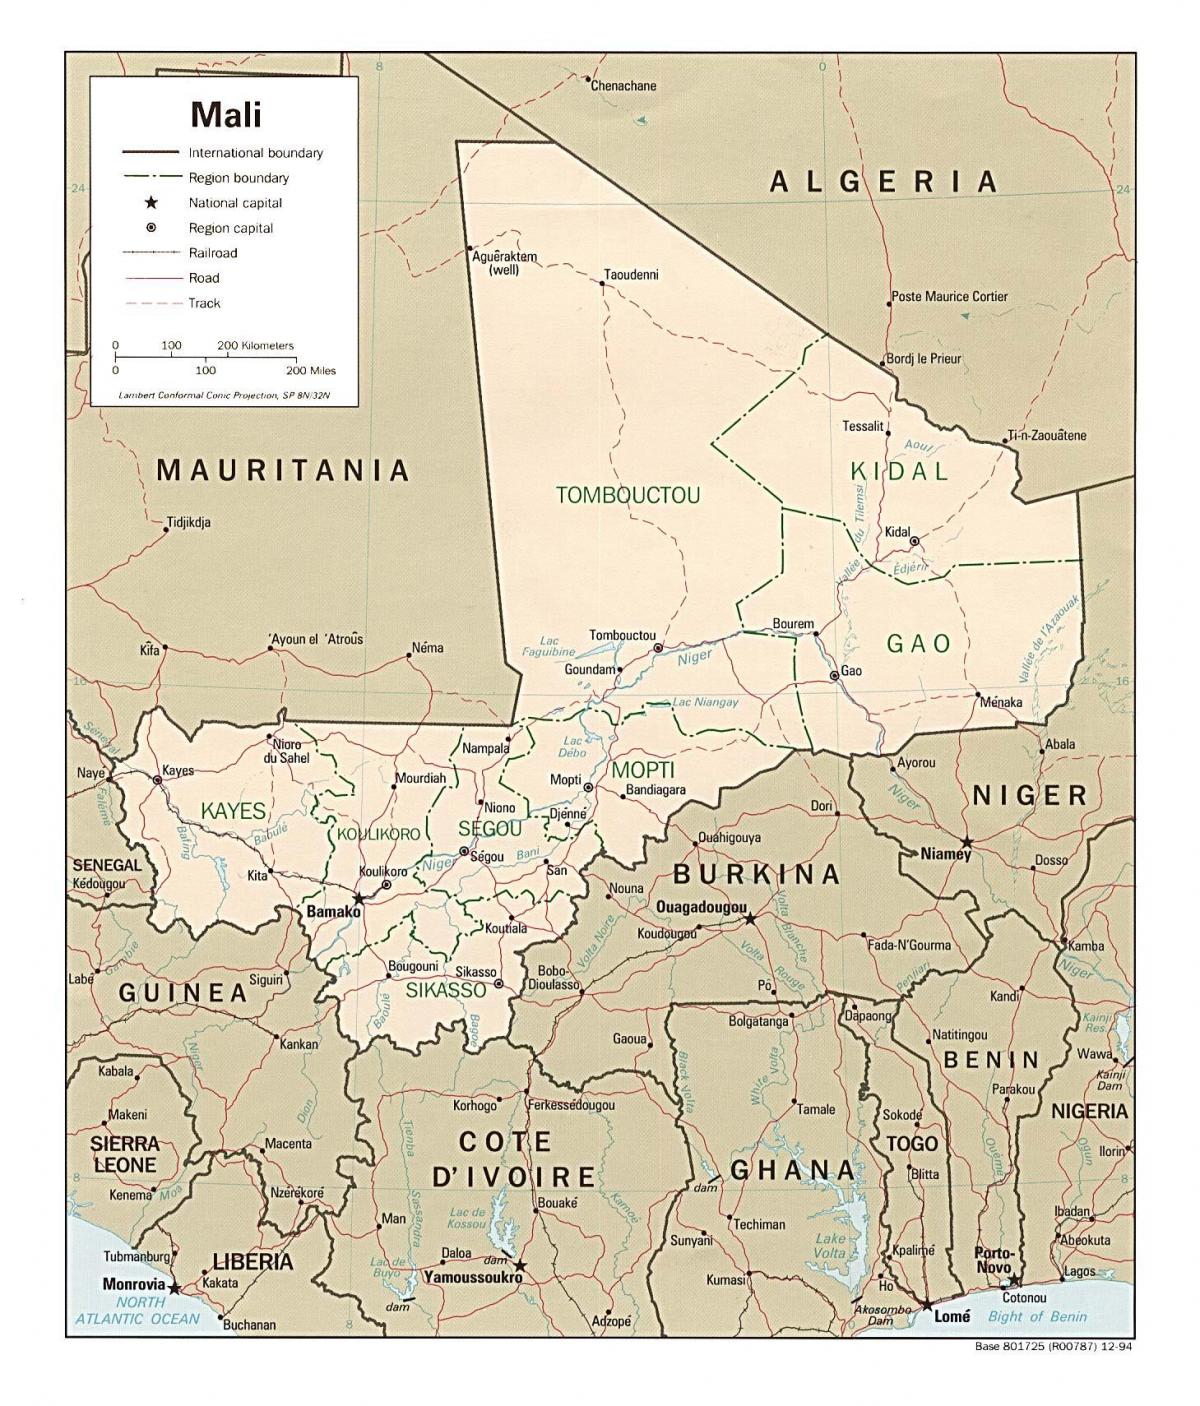 地図のマリ国